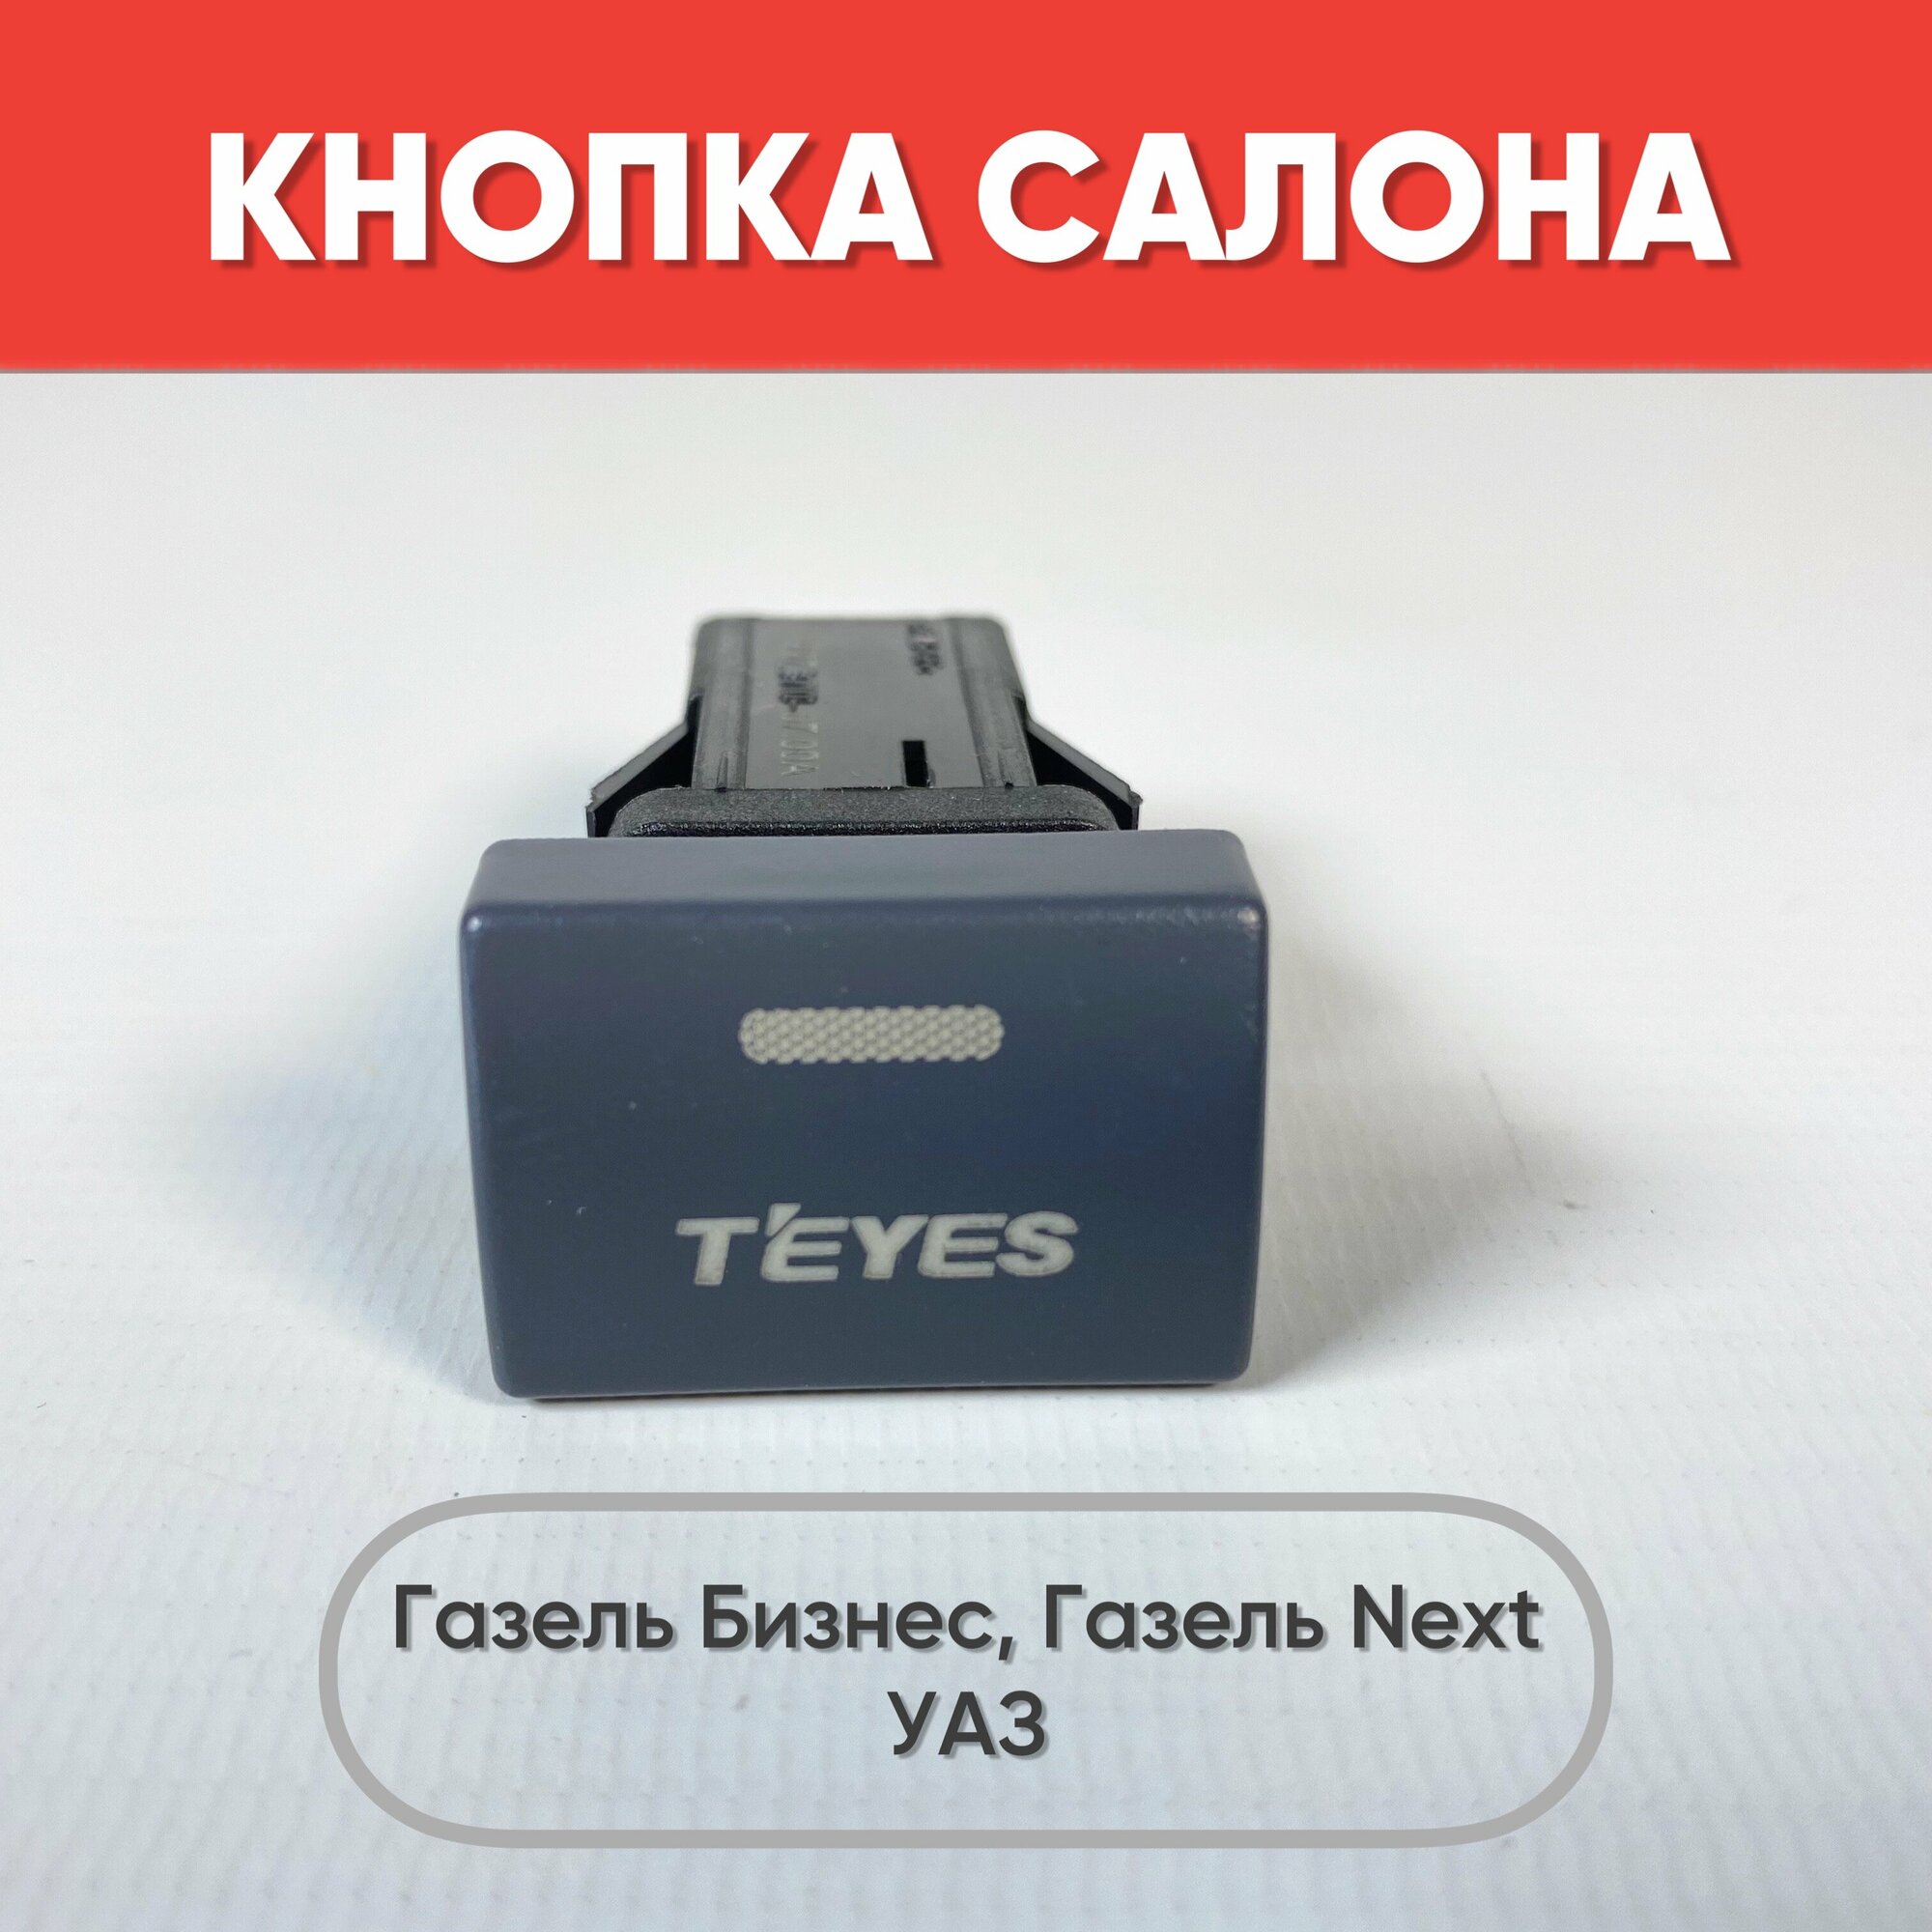 Кнопка салона с надписью T'EYES на Газель Бизнес, Газель Next, УАЗ (зеленая подсветка)